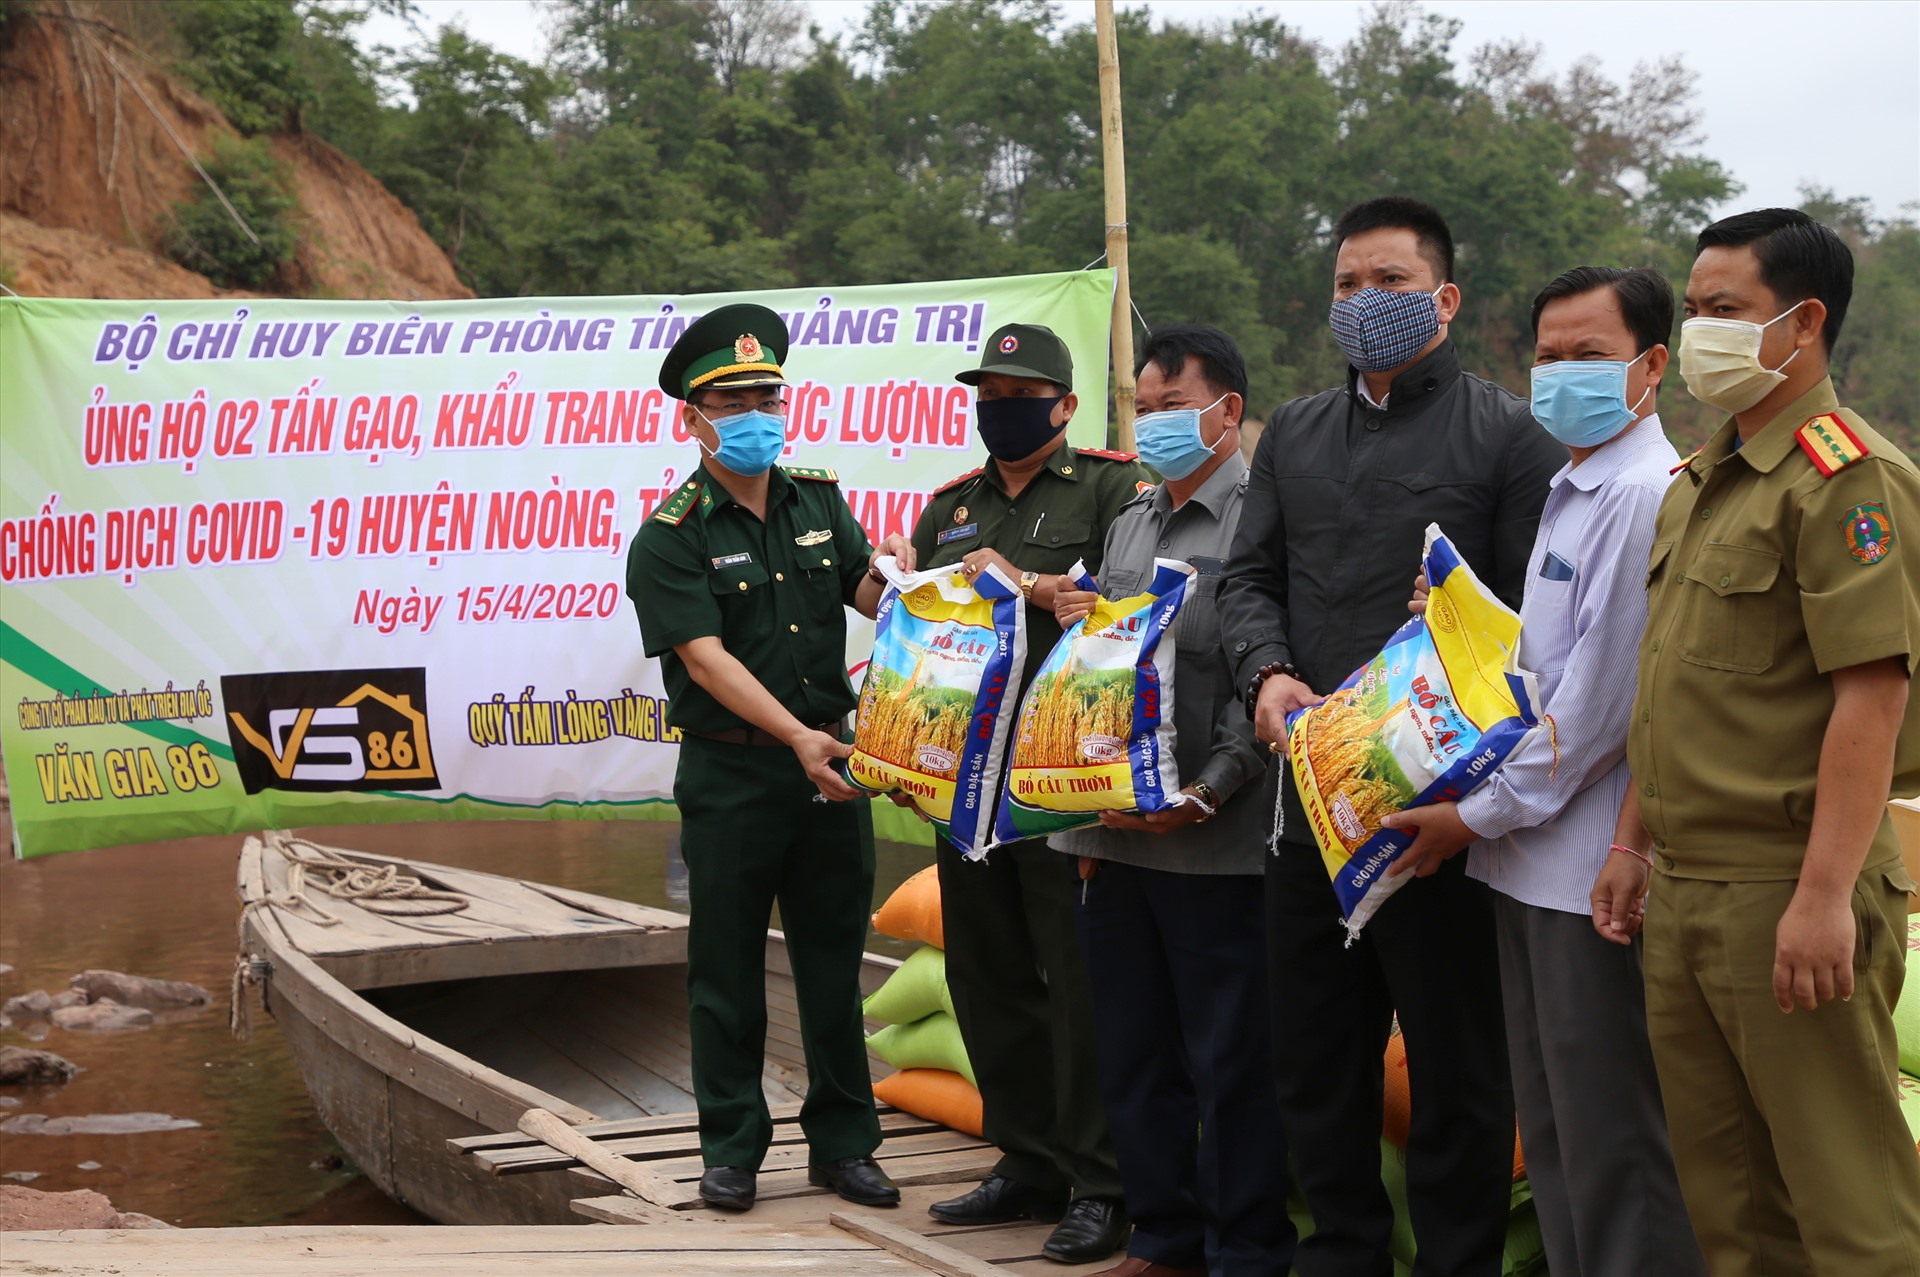 02 tấn gạo, 1.000 trang y tế, 100 khẩu trang vải, 36 chai sát khuẩn, 100 bộ bảo hộ phòng dịch, 100 đôi găng tay được trao cho chính quyền và người dân huyện Mường Nòng.